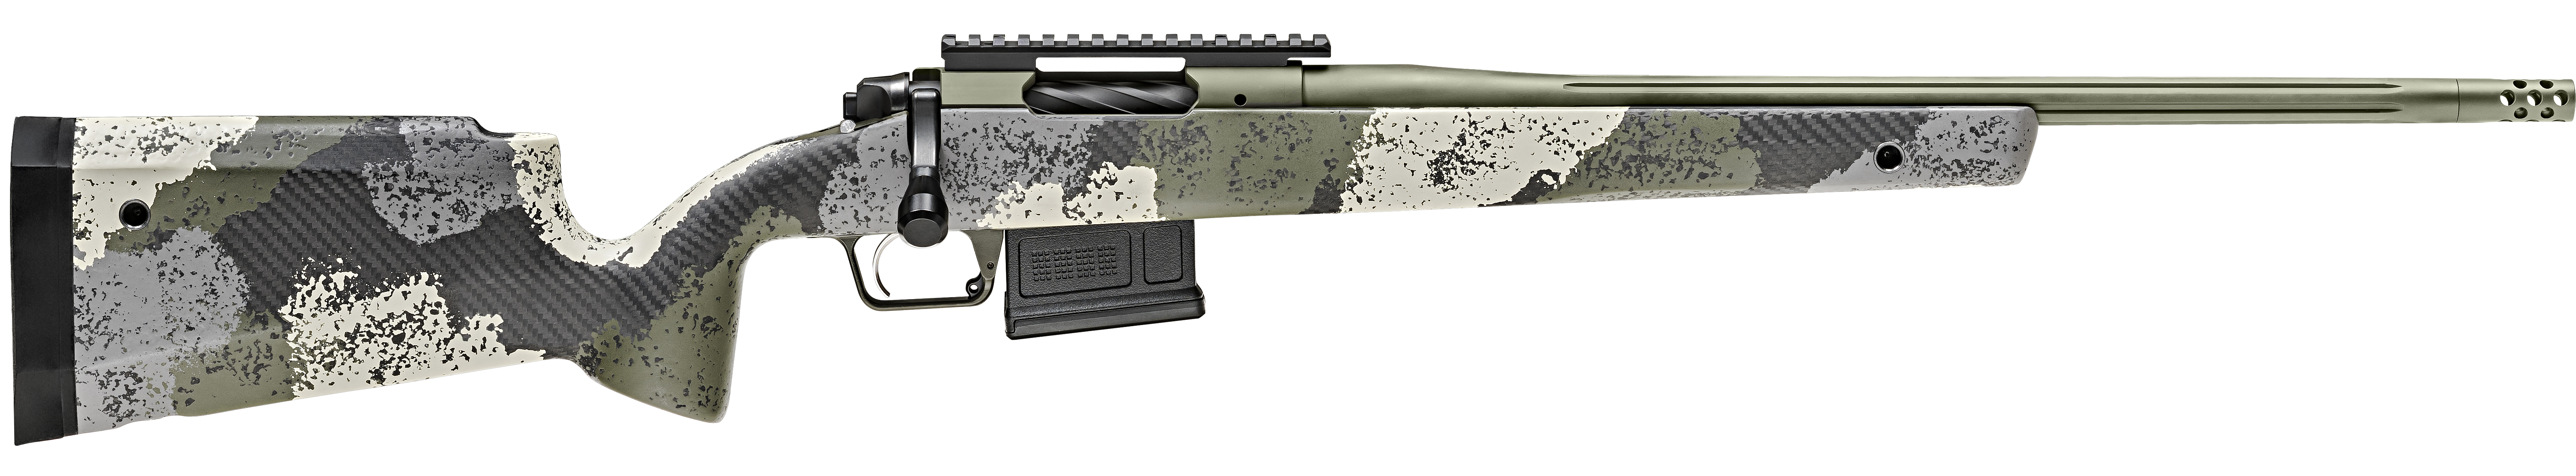 SPR 2020WP 308 20 EVGRN 5RD - Long Guns